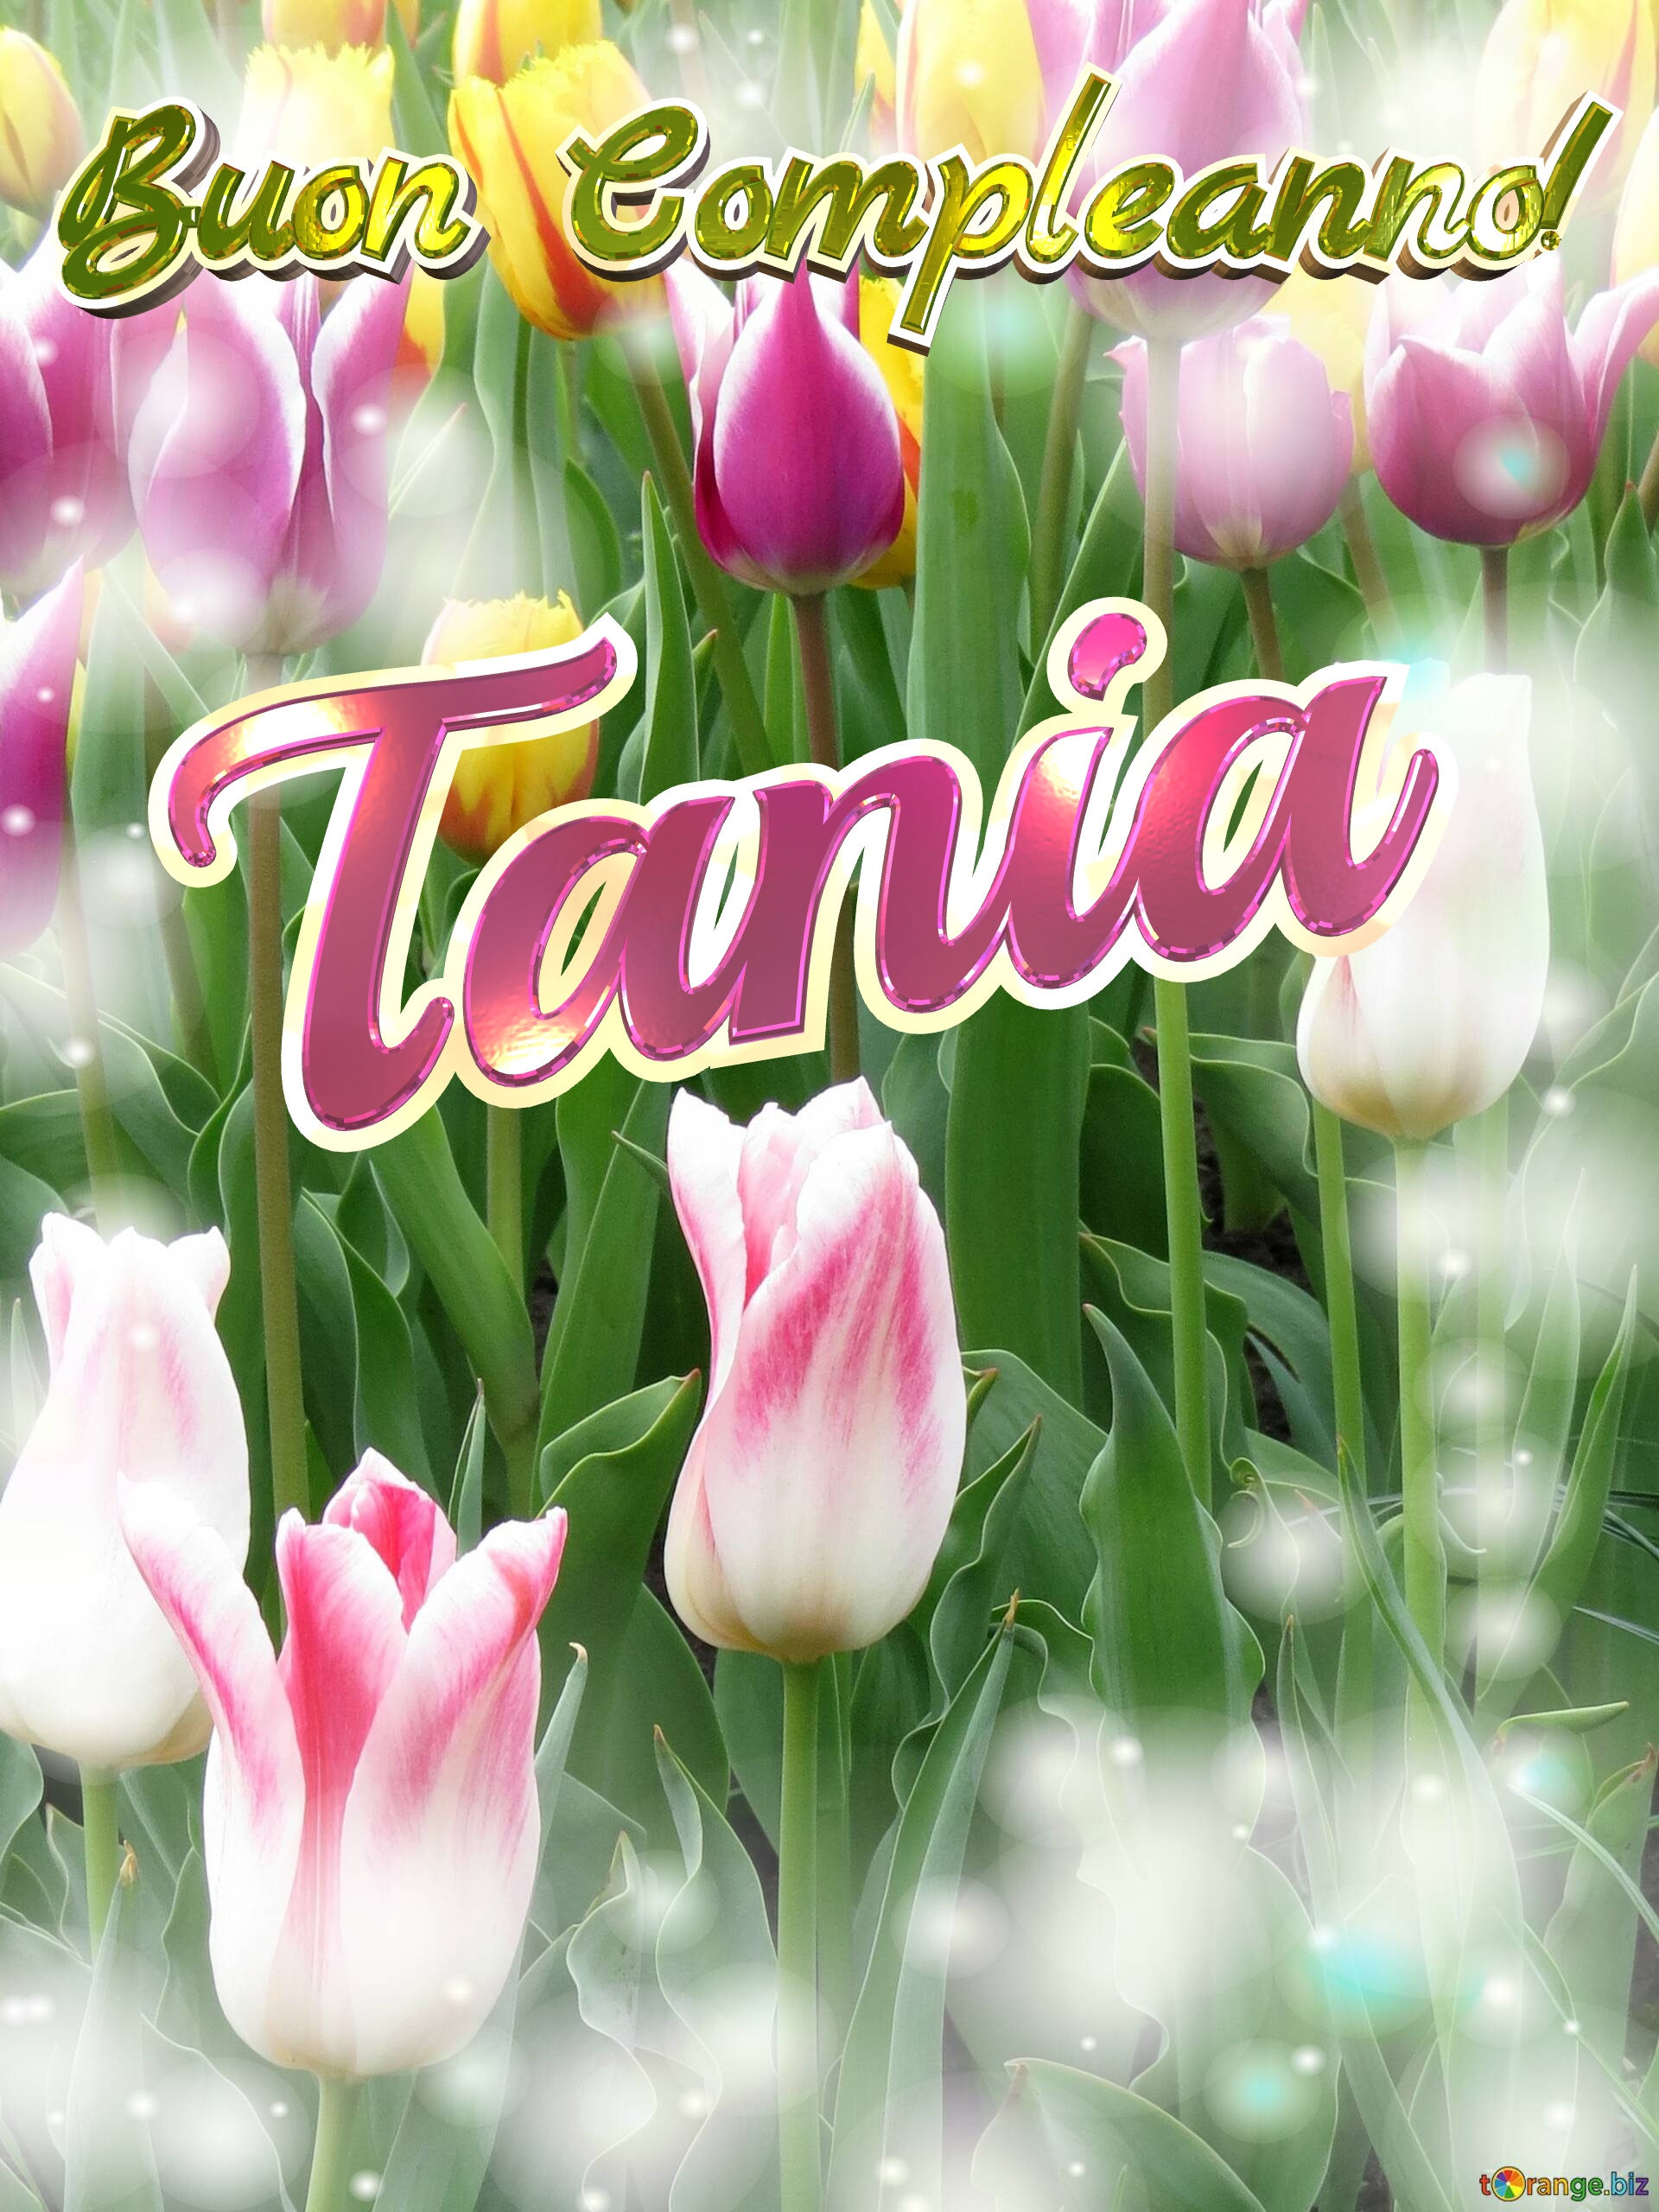 Buon Compleanno! Tania  Che questi tulipani ti portino la pace e la tranquillità che stai cercando nella tua vita. №0